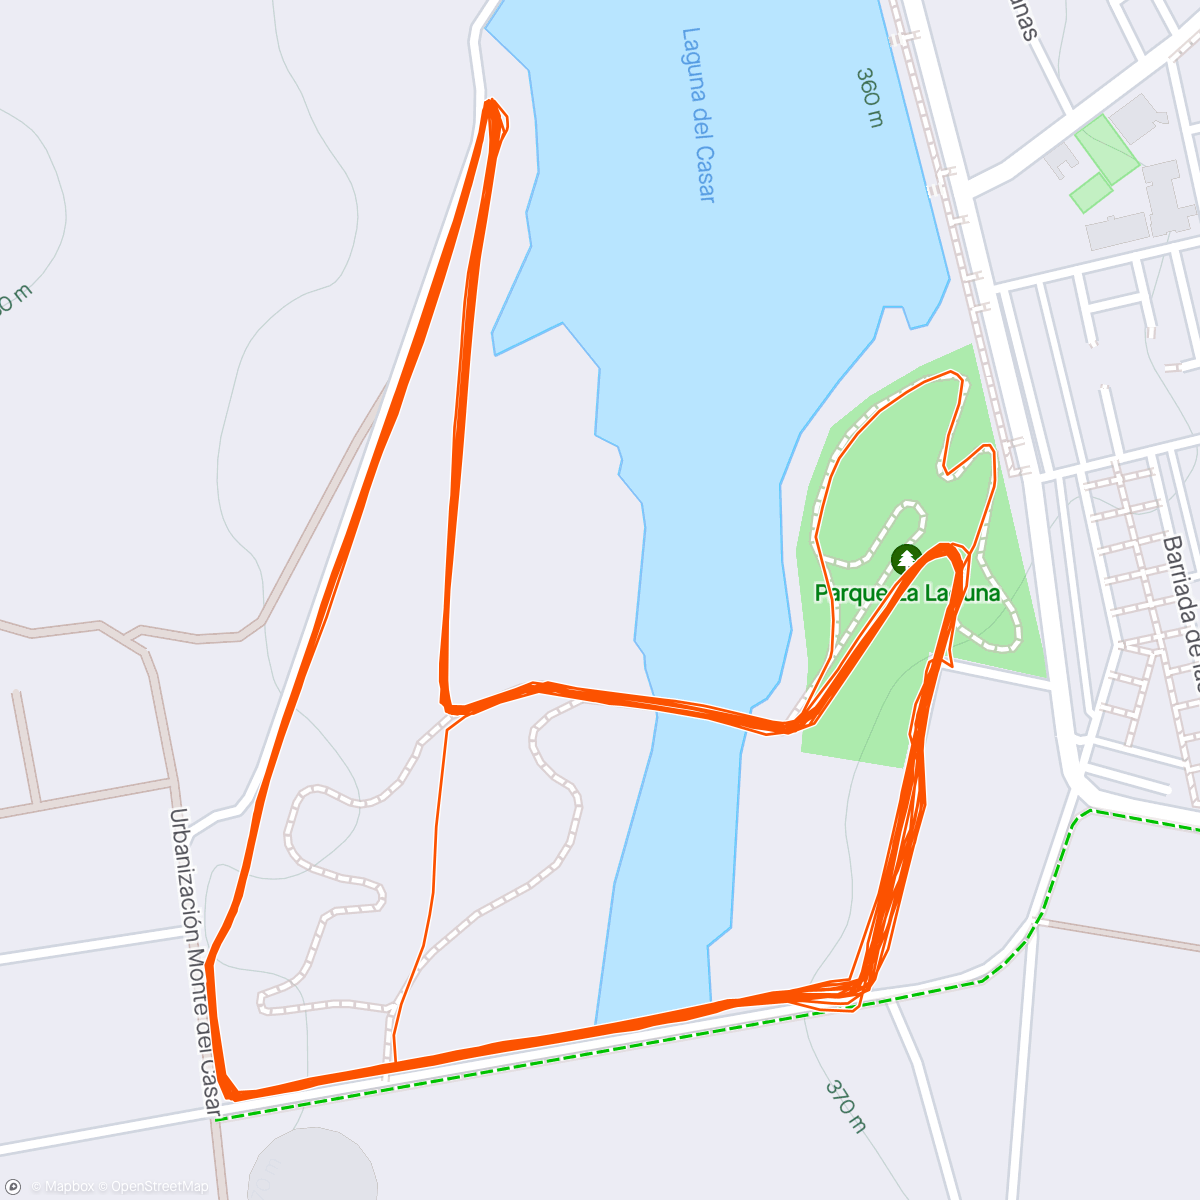 「Carrera solidaria 30 km circuito charca del Casar de Cáceres.」活動的地圖